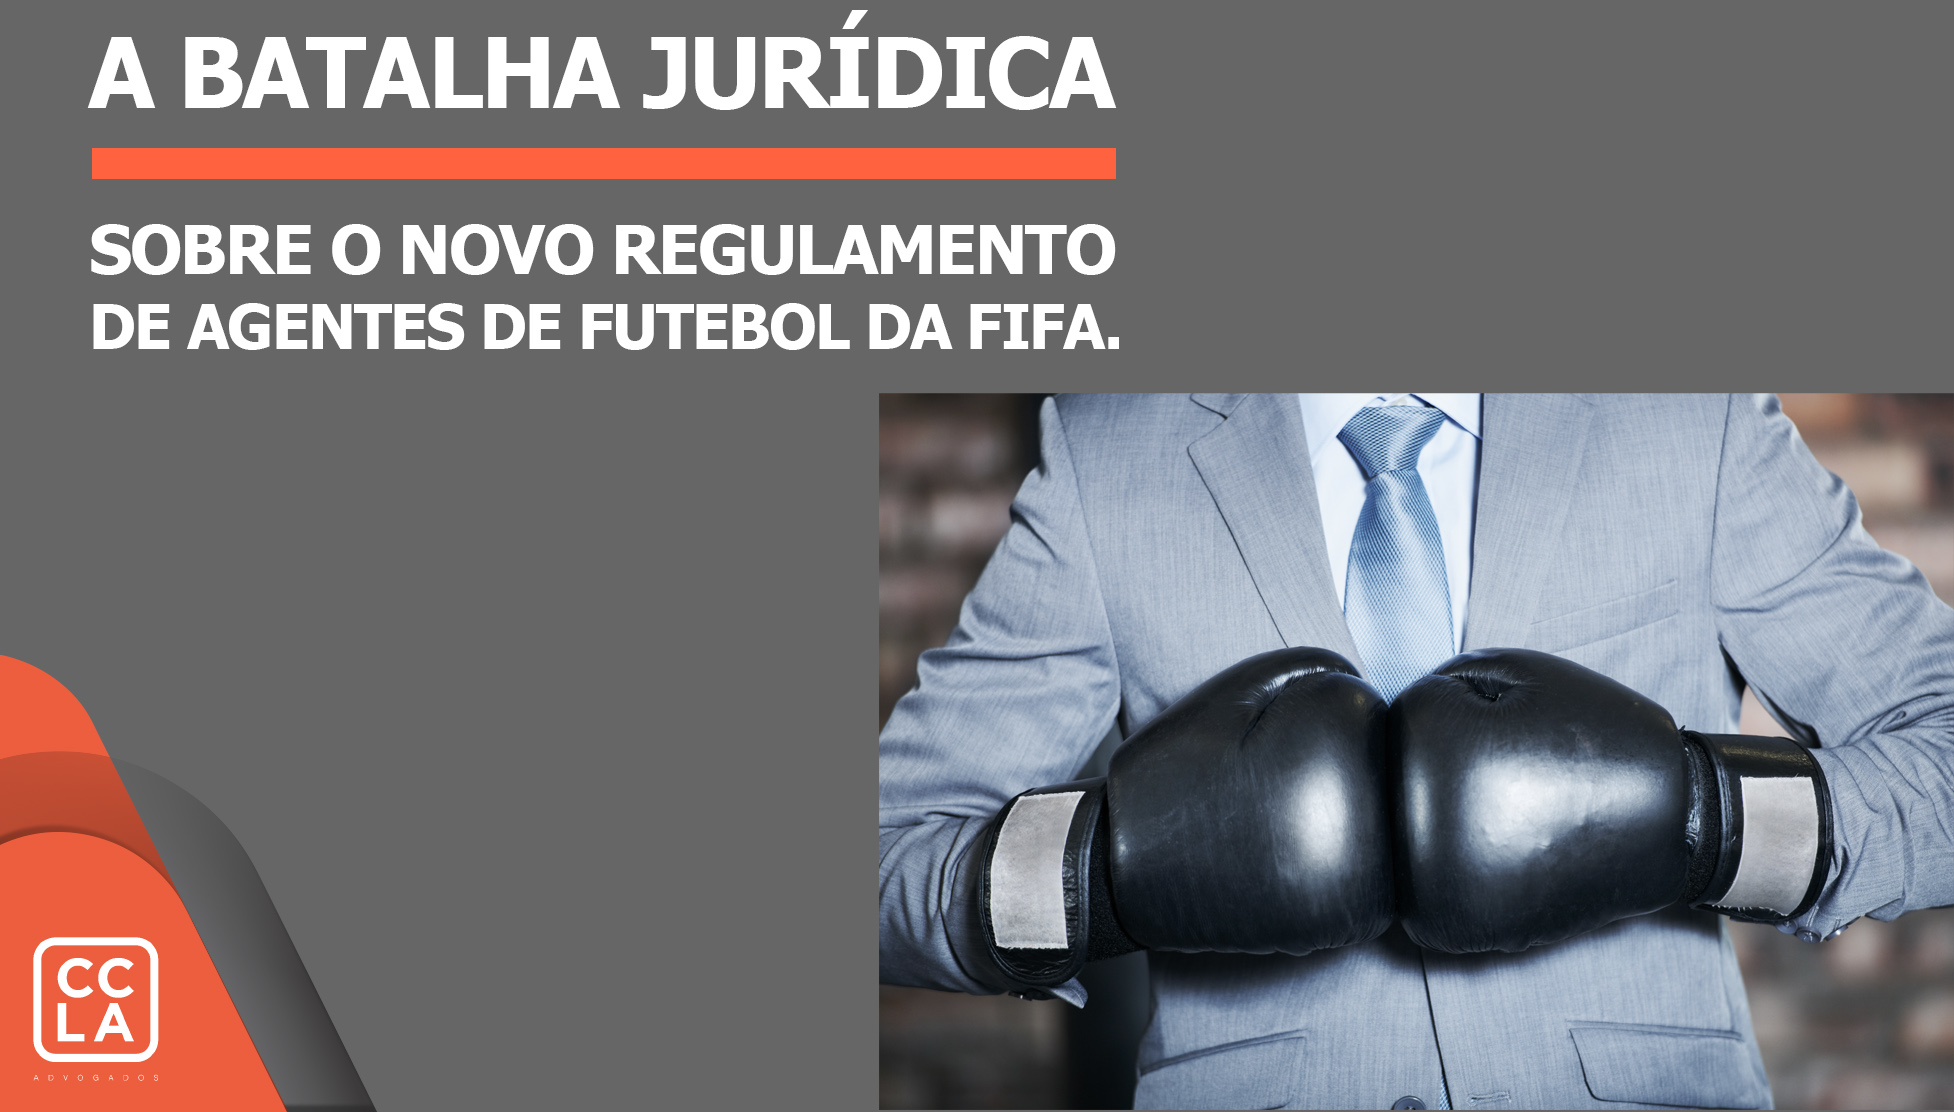 A batalha jurídica sobre o novo Regulamento de Agentes de Futebol